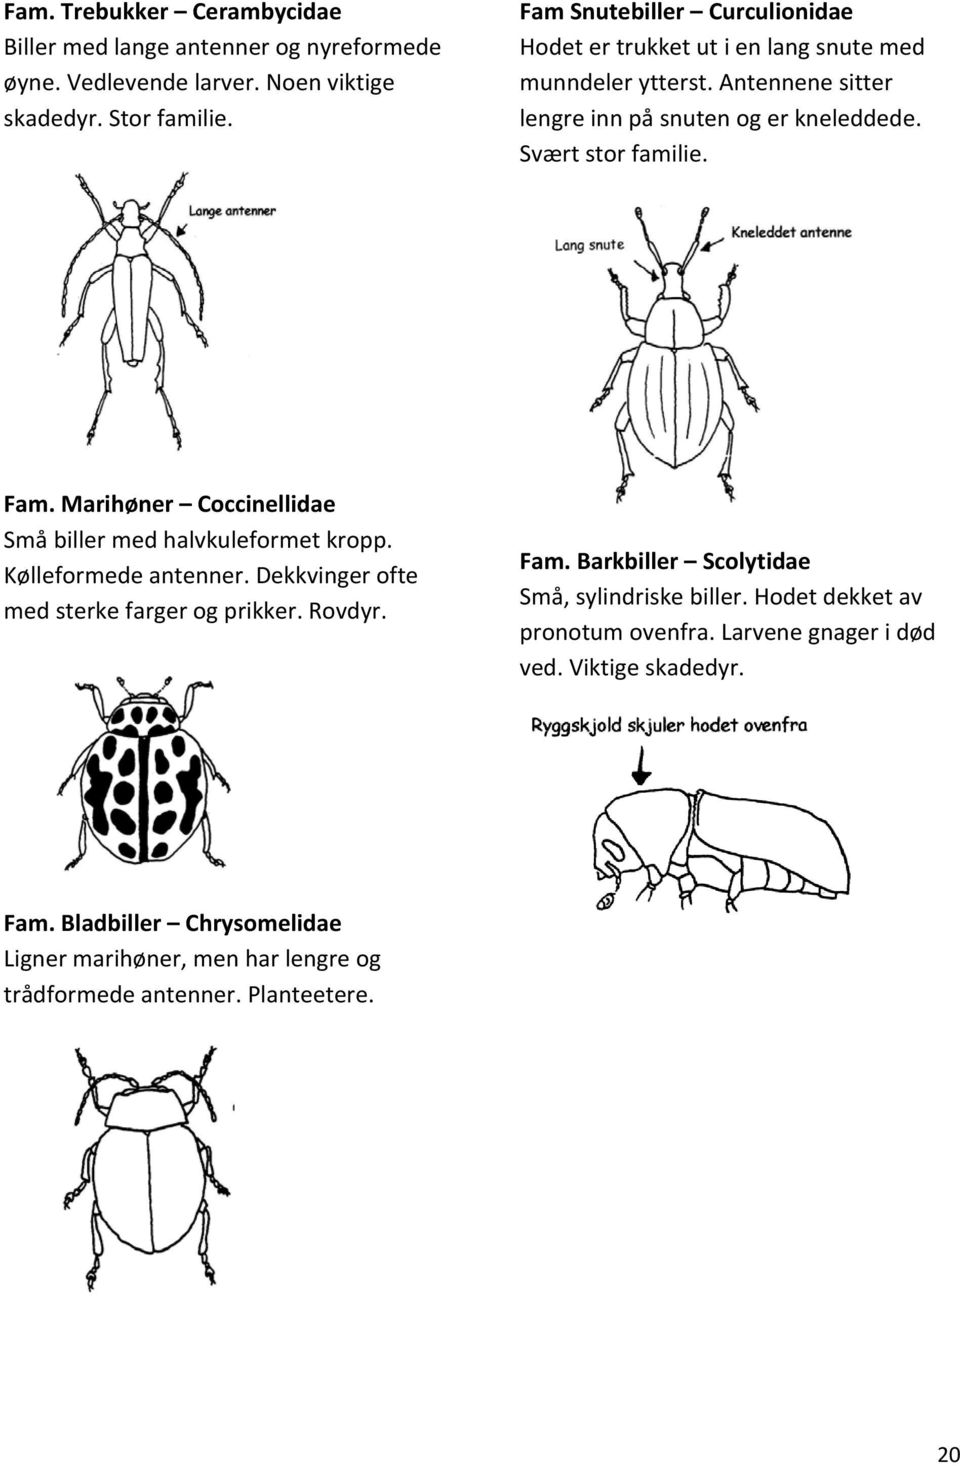 Fam. Marihøner Coccinellidae Små biller med halvkuleformet kropp. Kølleformede antenner. Dekkvinger ofte med sterke farger og prikker. Rovdyr. Fam.